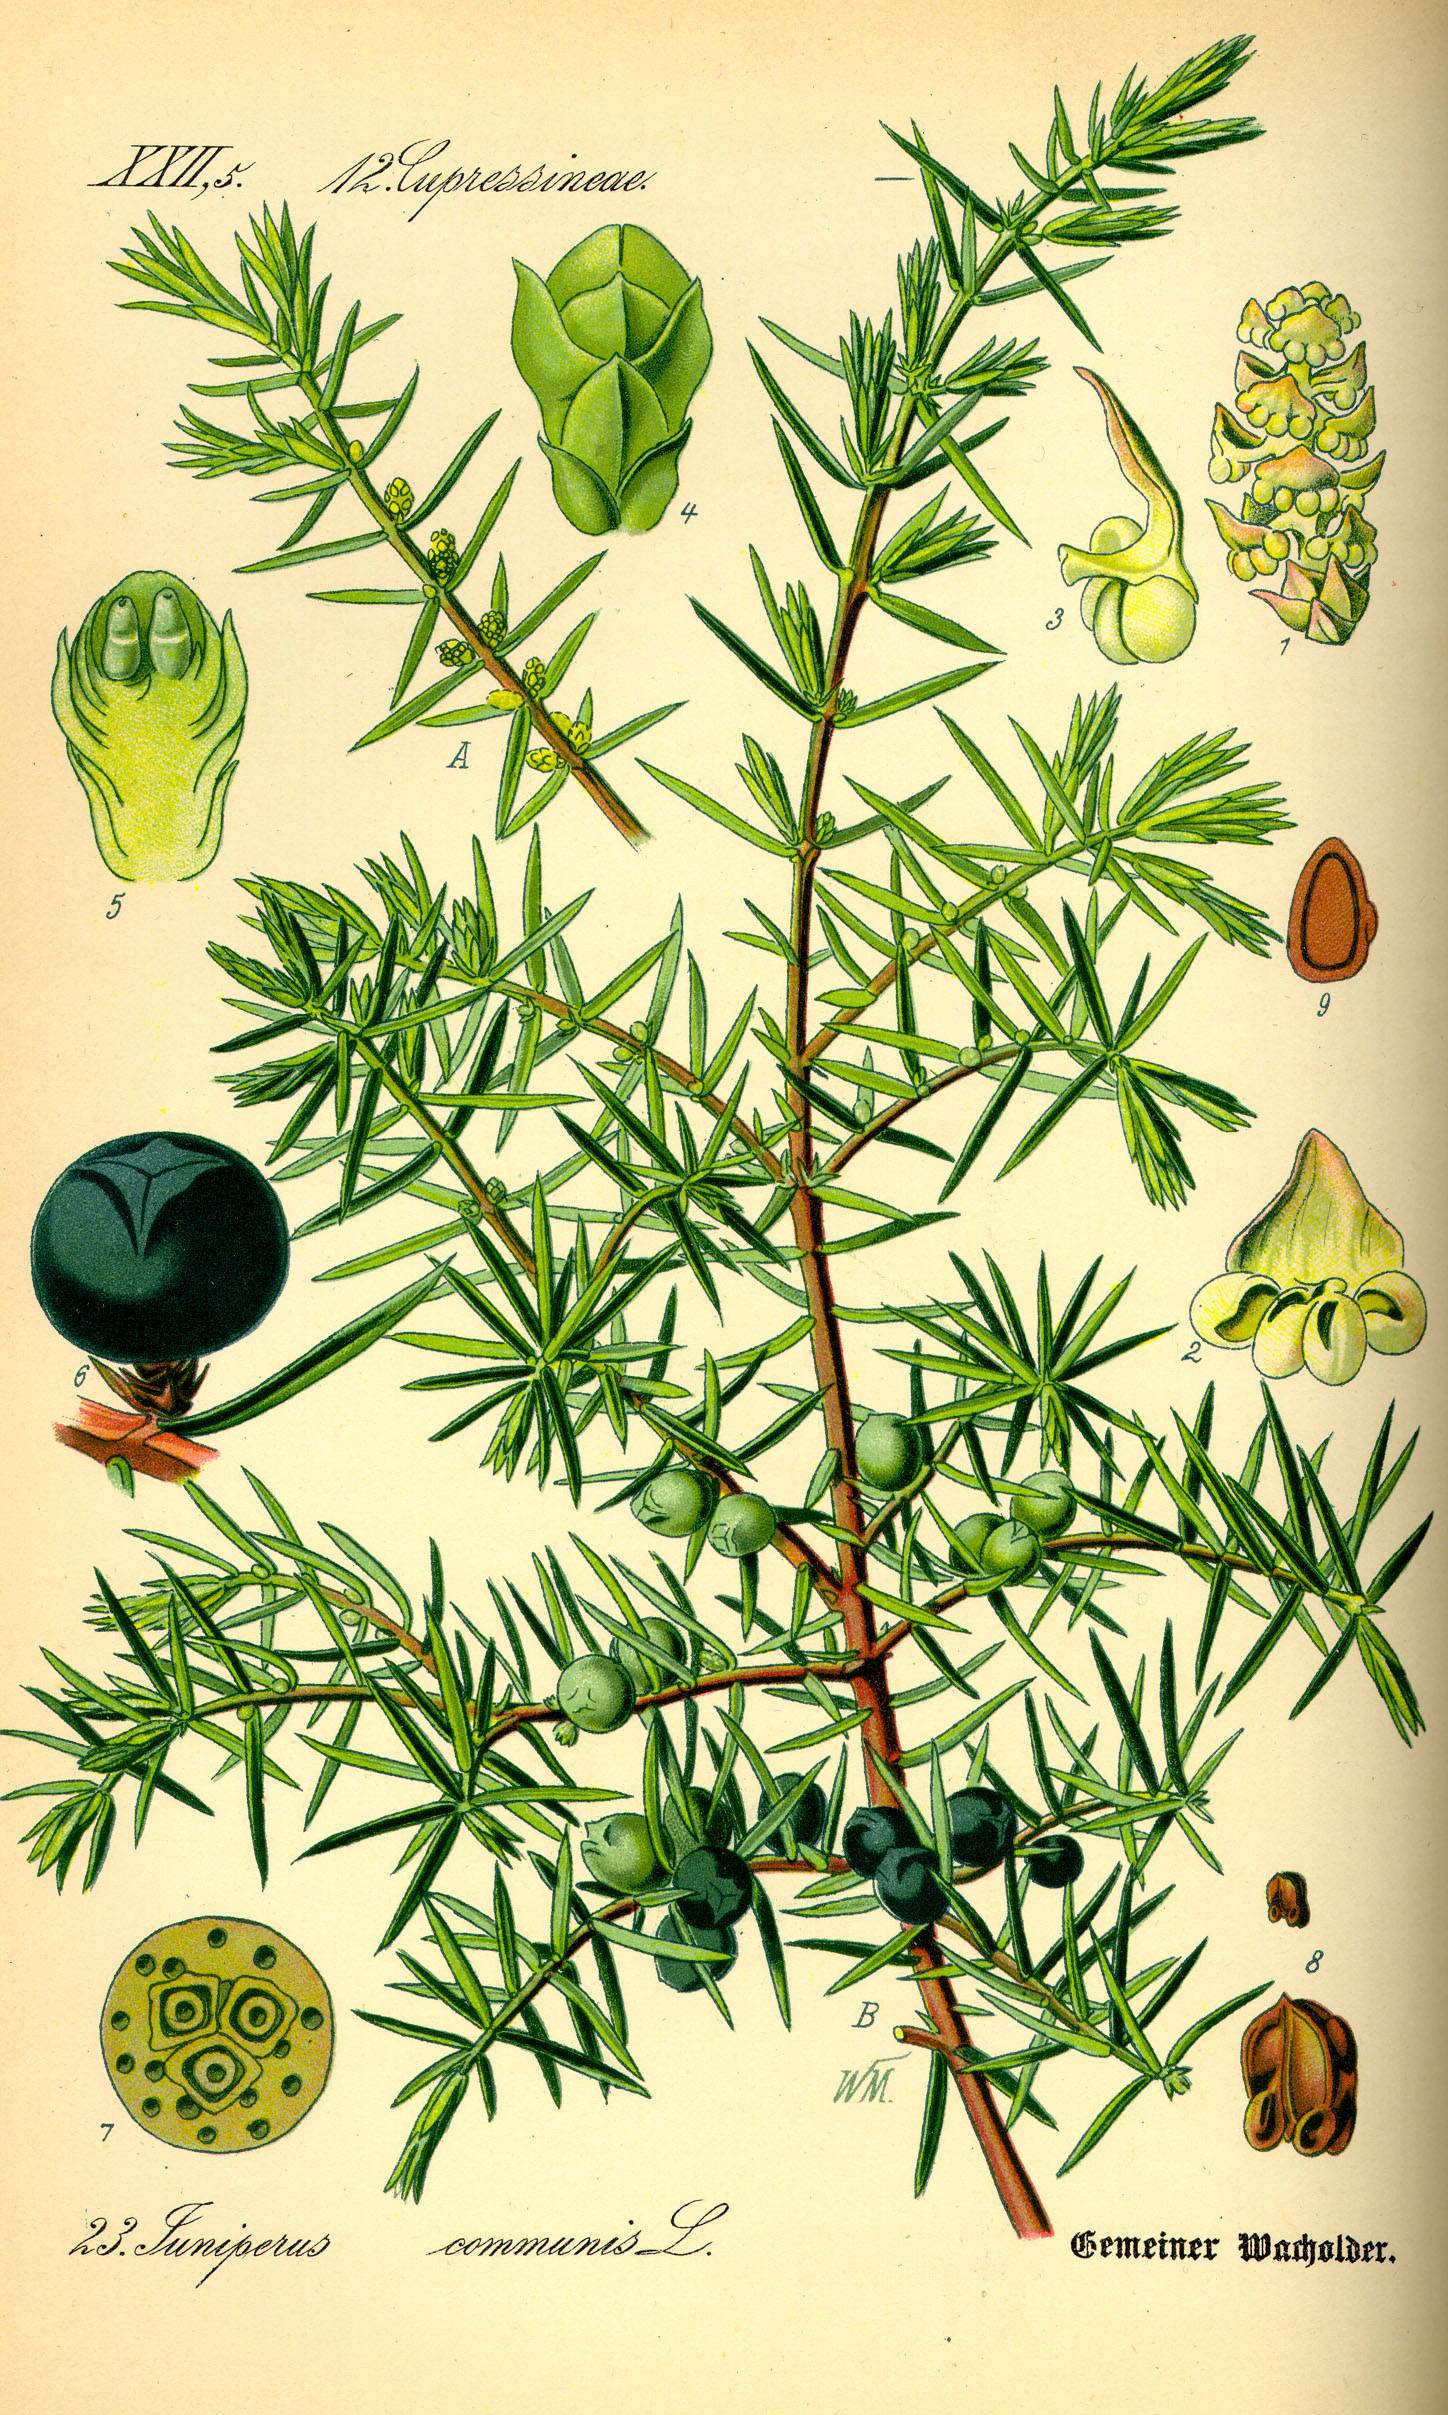 Juniperus communis (berkshire common juniper, common juniper, ground juniper)